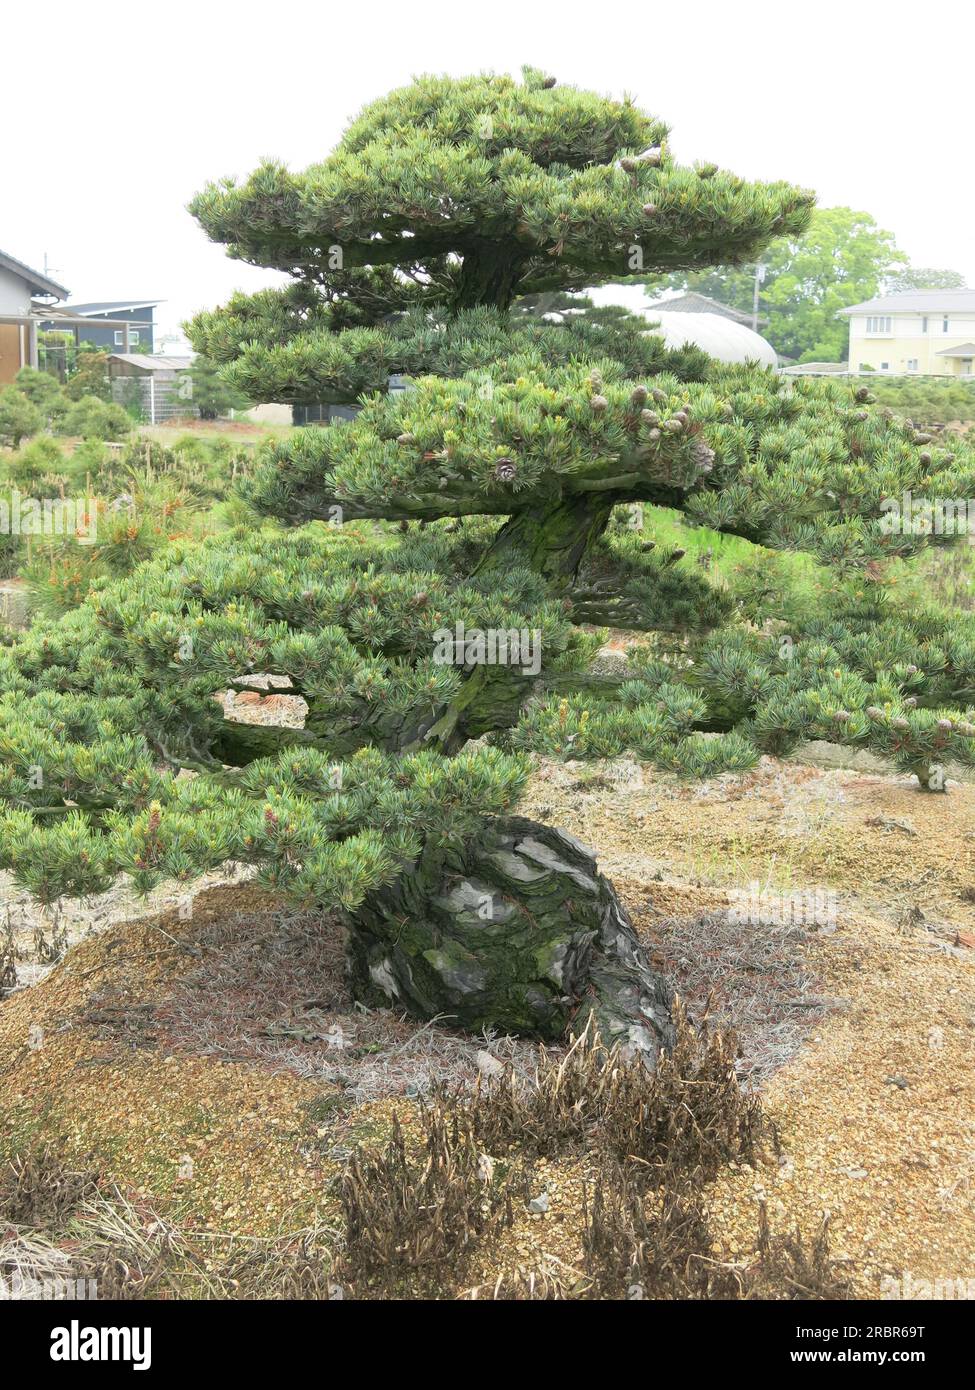 Spécimen de bonsaï mature où le pin a été taillé pendant de nombreuses décennies dans une pépinière de la capitale japonaise de la culture du bonsaï, le village de Kinashi. Banque D'Images